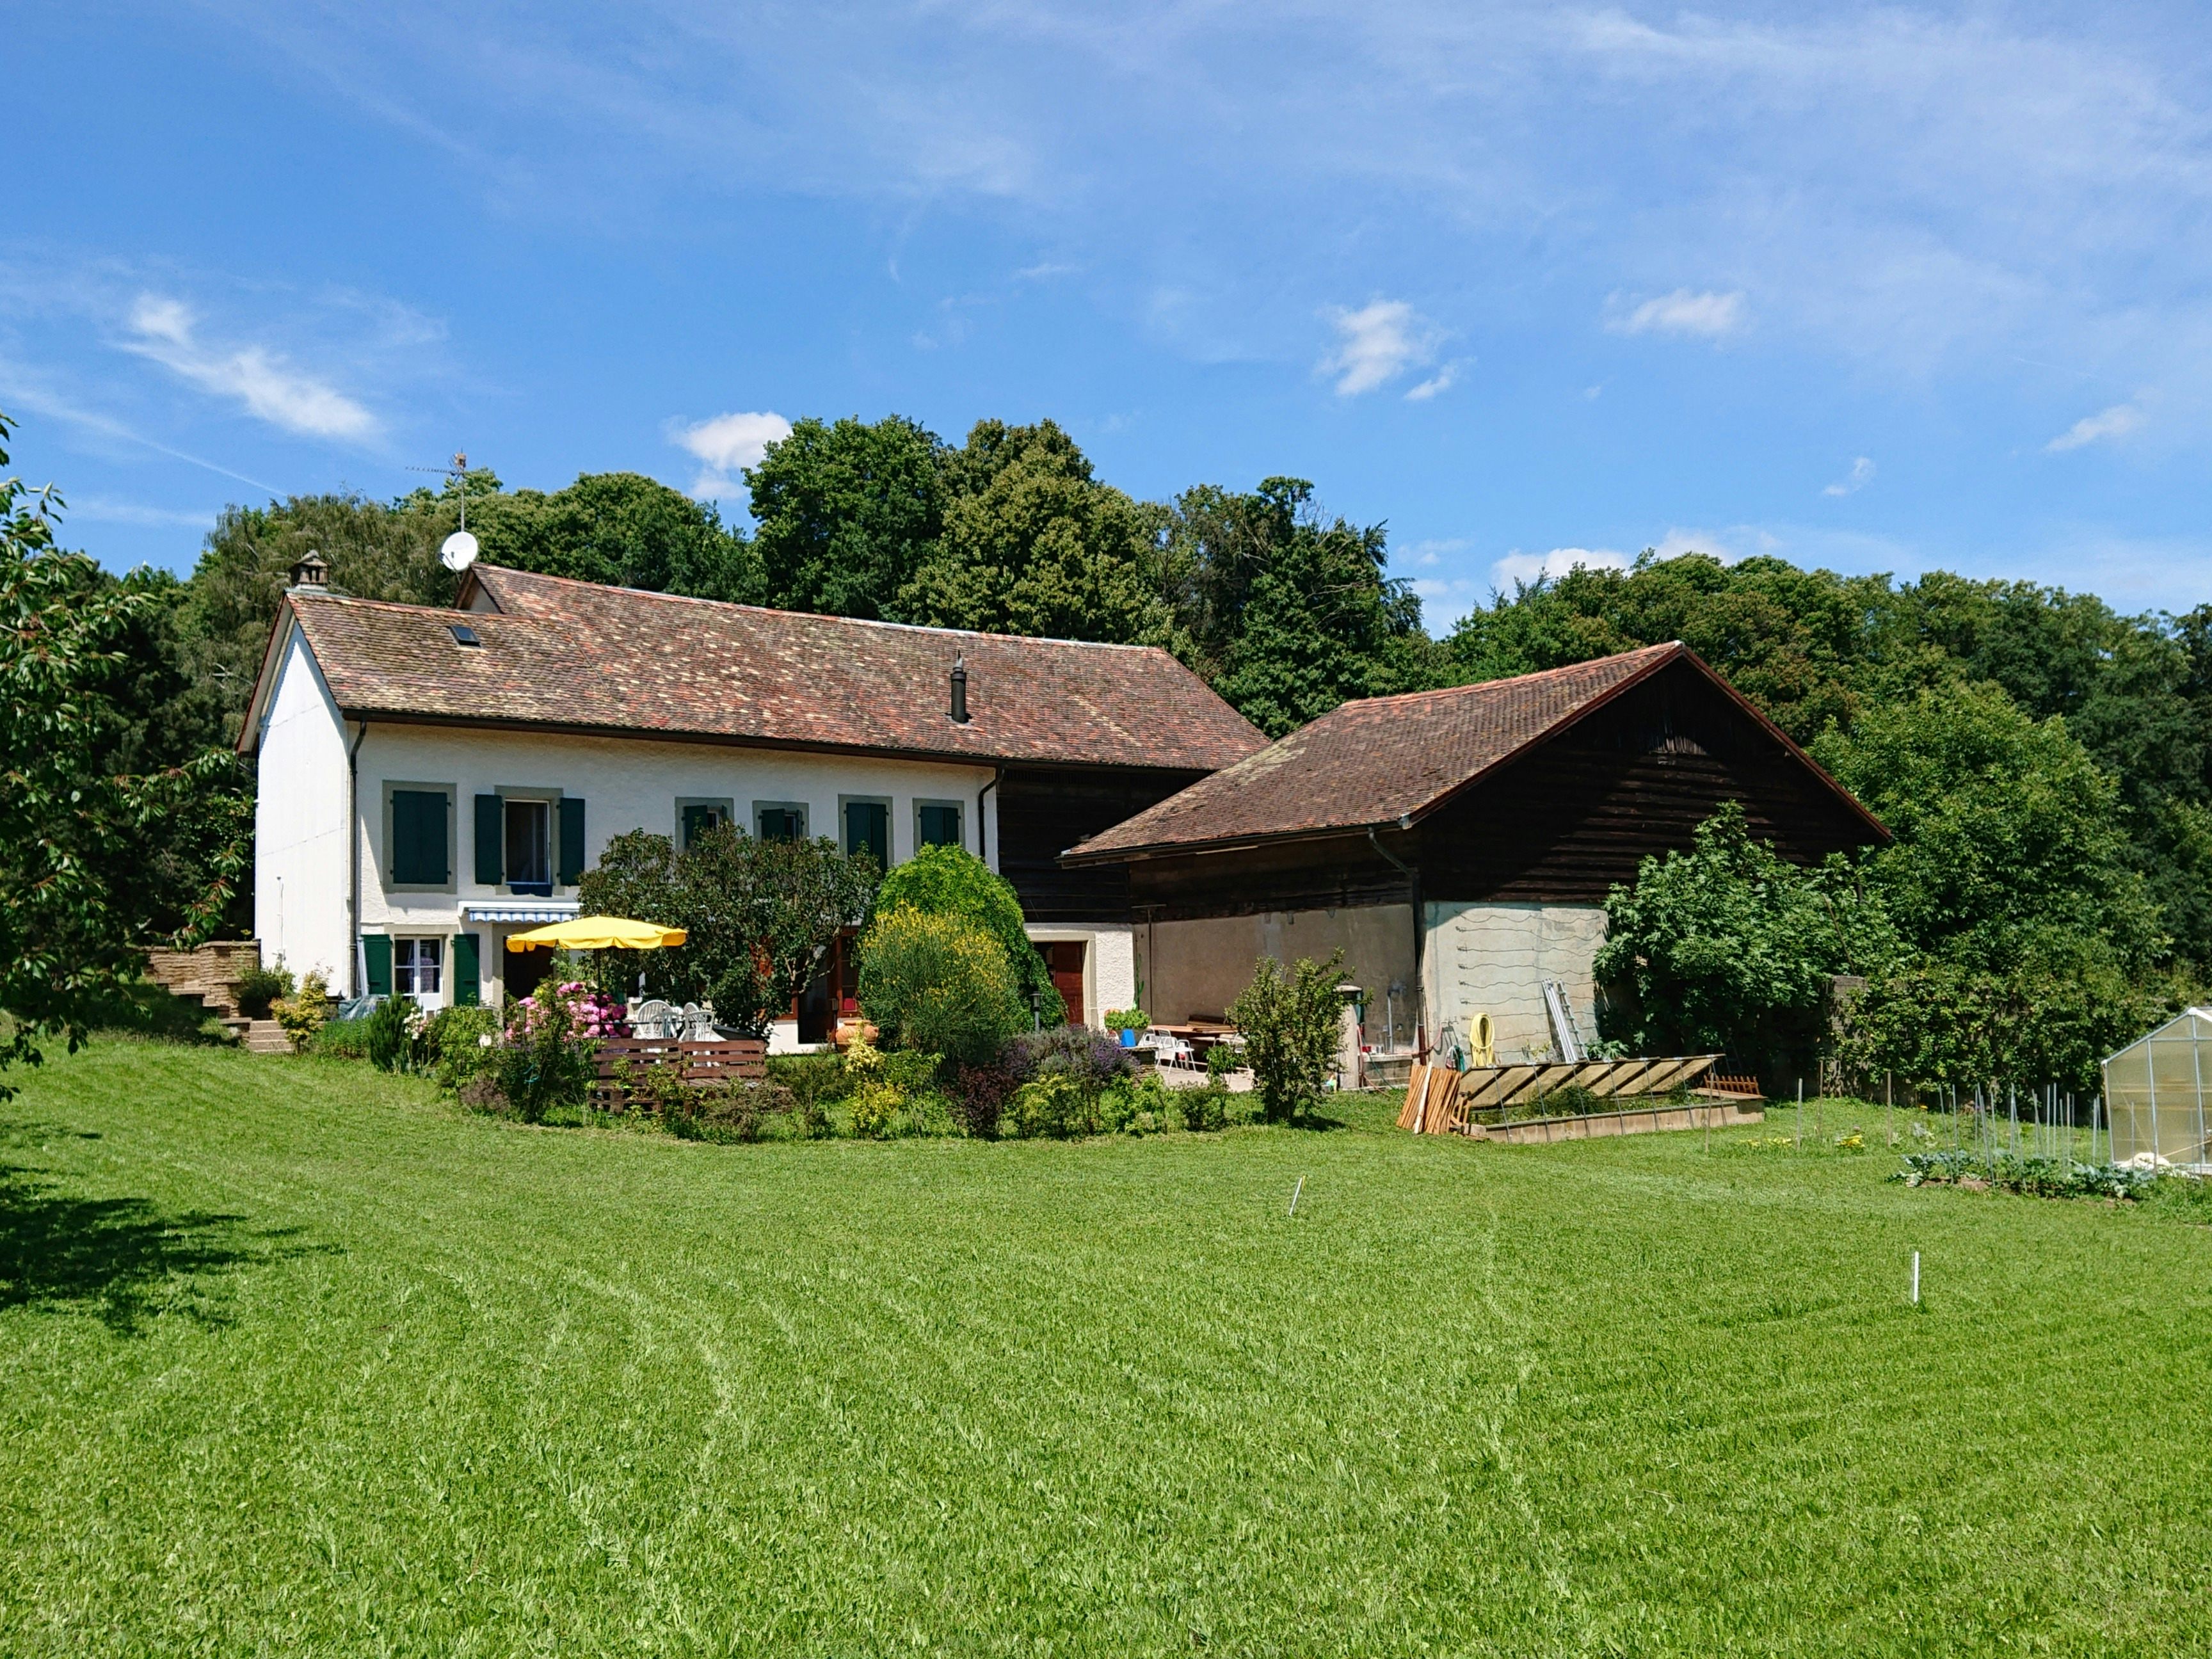 C'doux, producer in Saint-Prex canton of Vaud in Switzerland